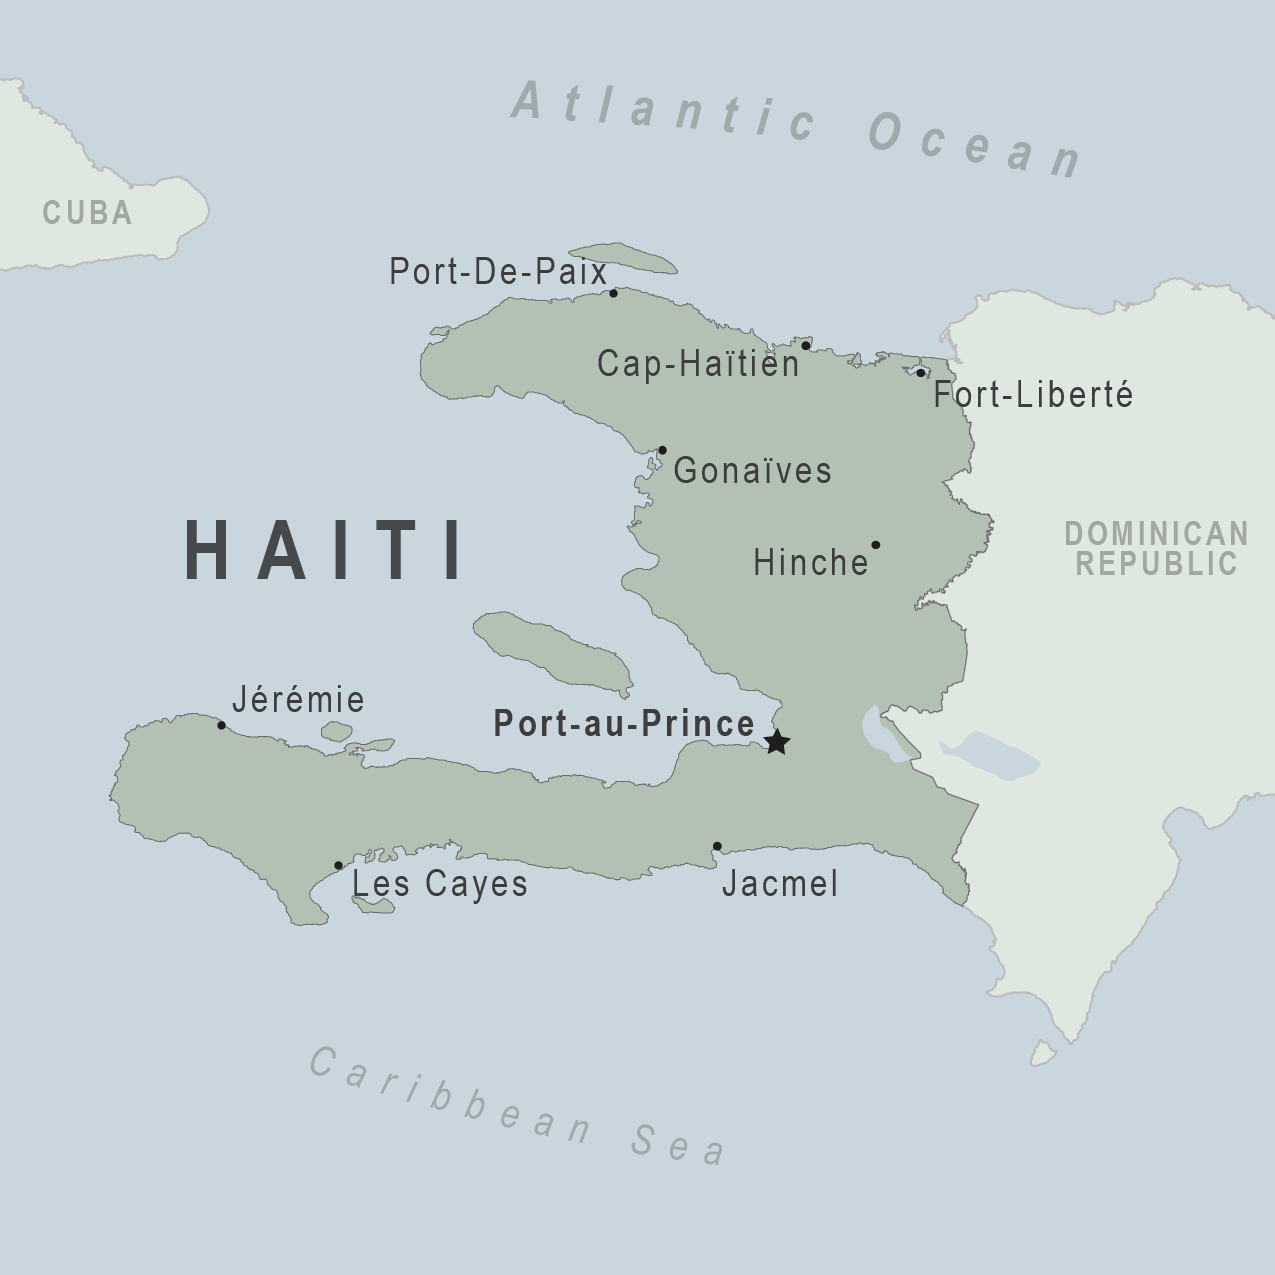 Chuyên tuyến đi Haiti bằng đường biển giá rẻ, đảm bảo